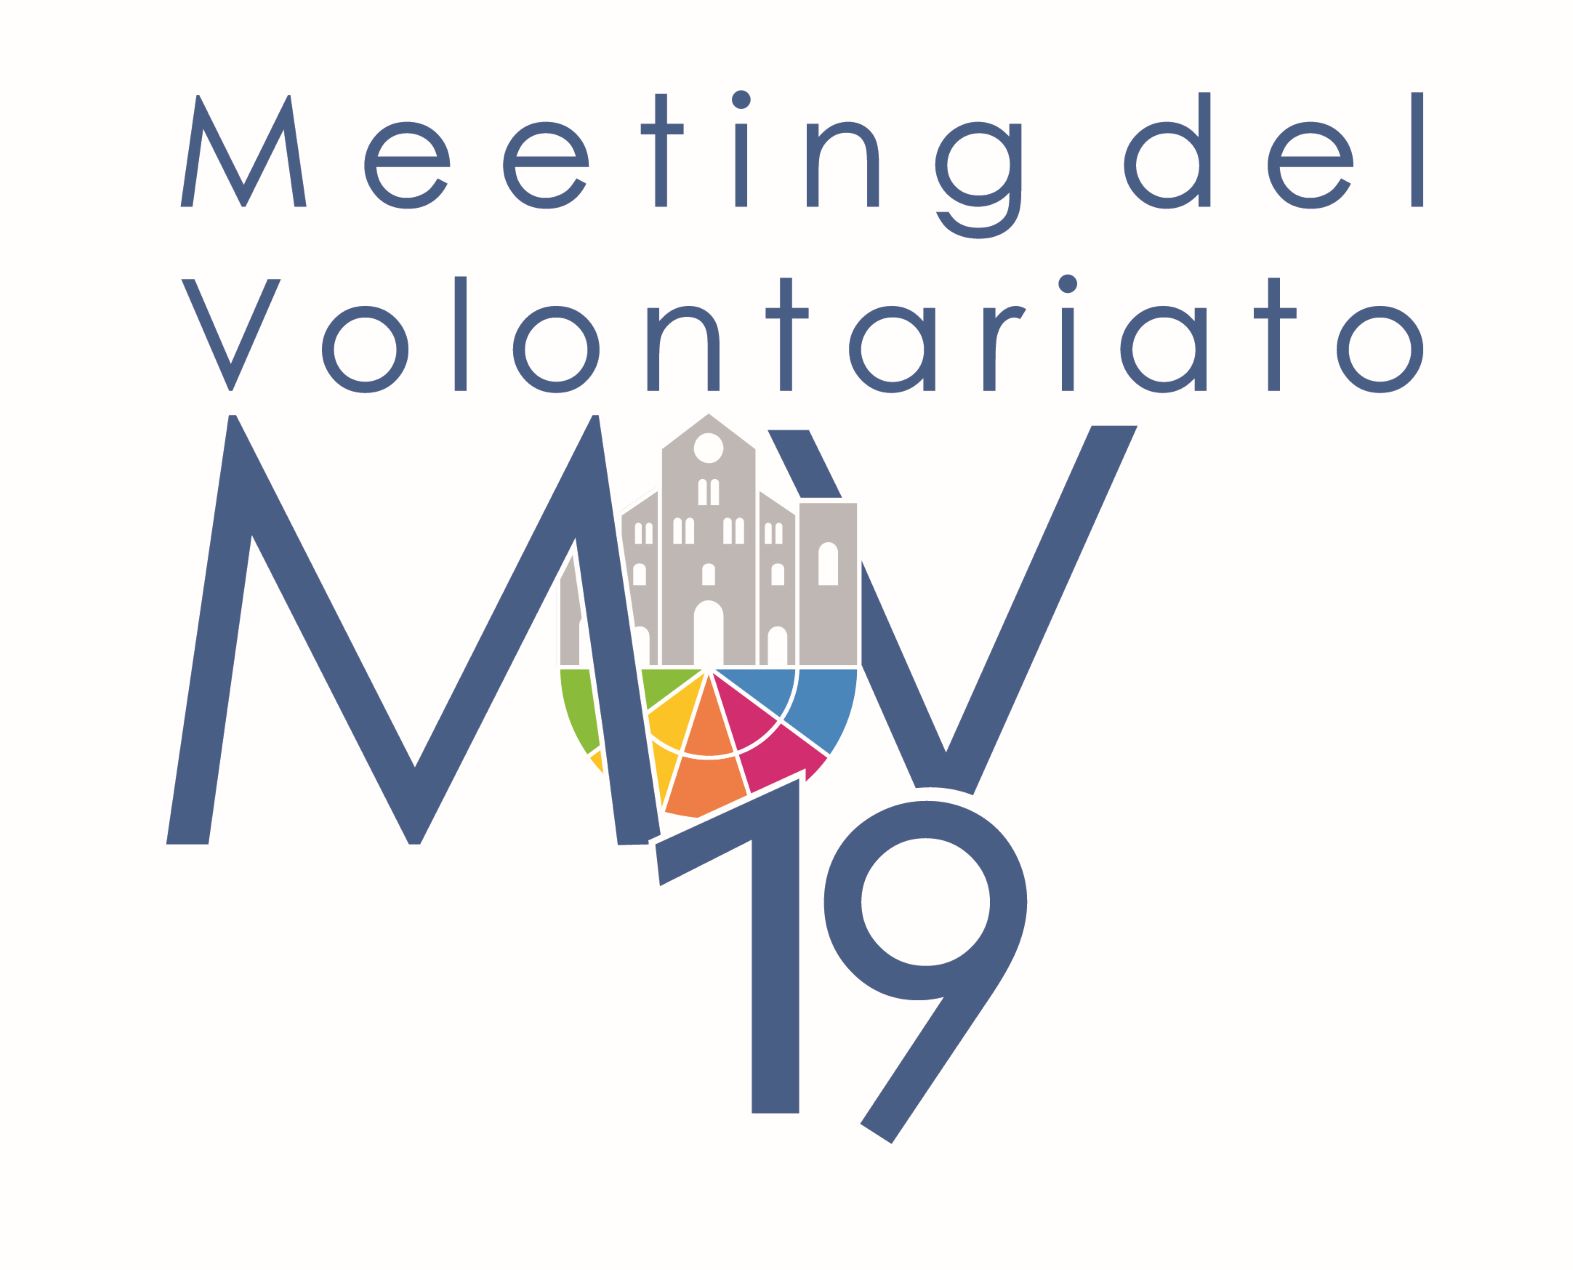 Meeting del Volontariato 2019 - Nuove GenerAzioni - dal 14 al 22 Settembre 2019 - Fiera del Levante di Bari